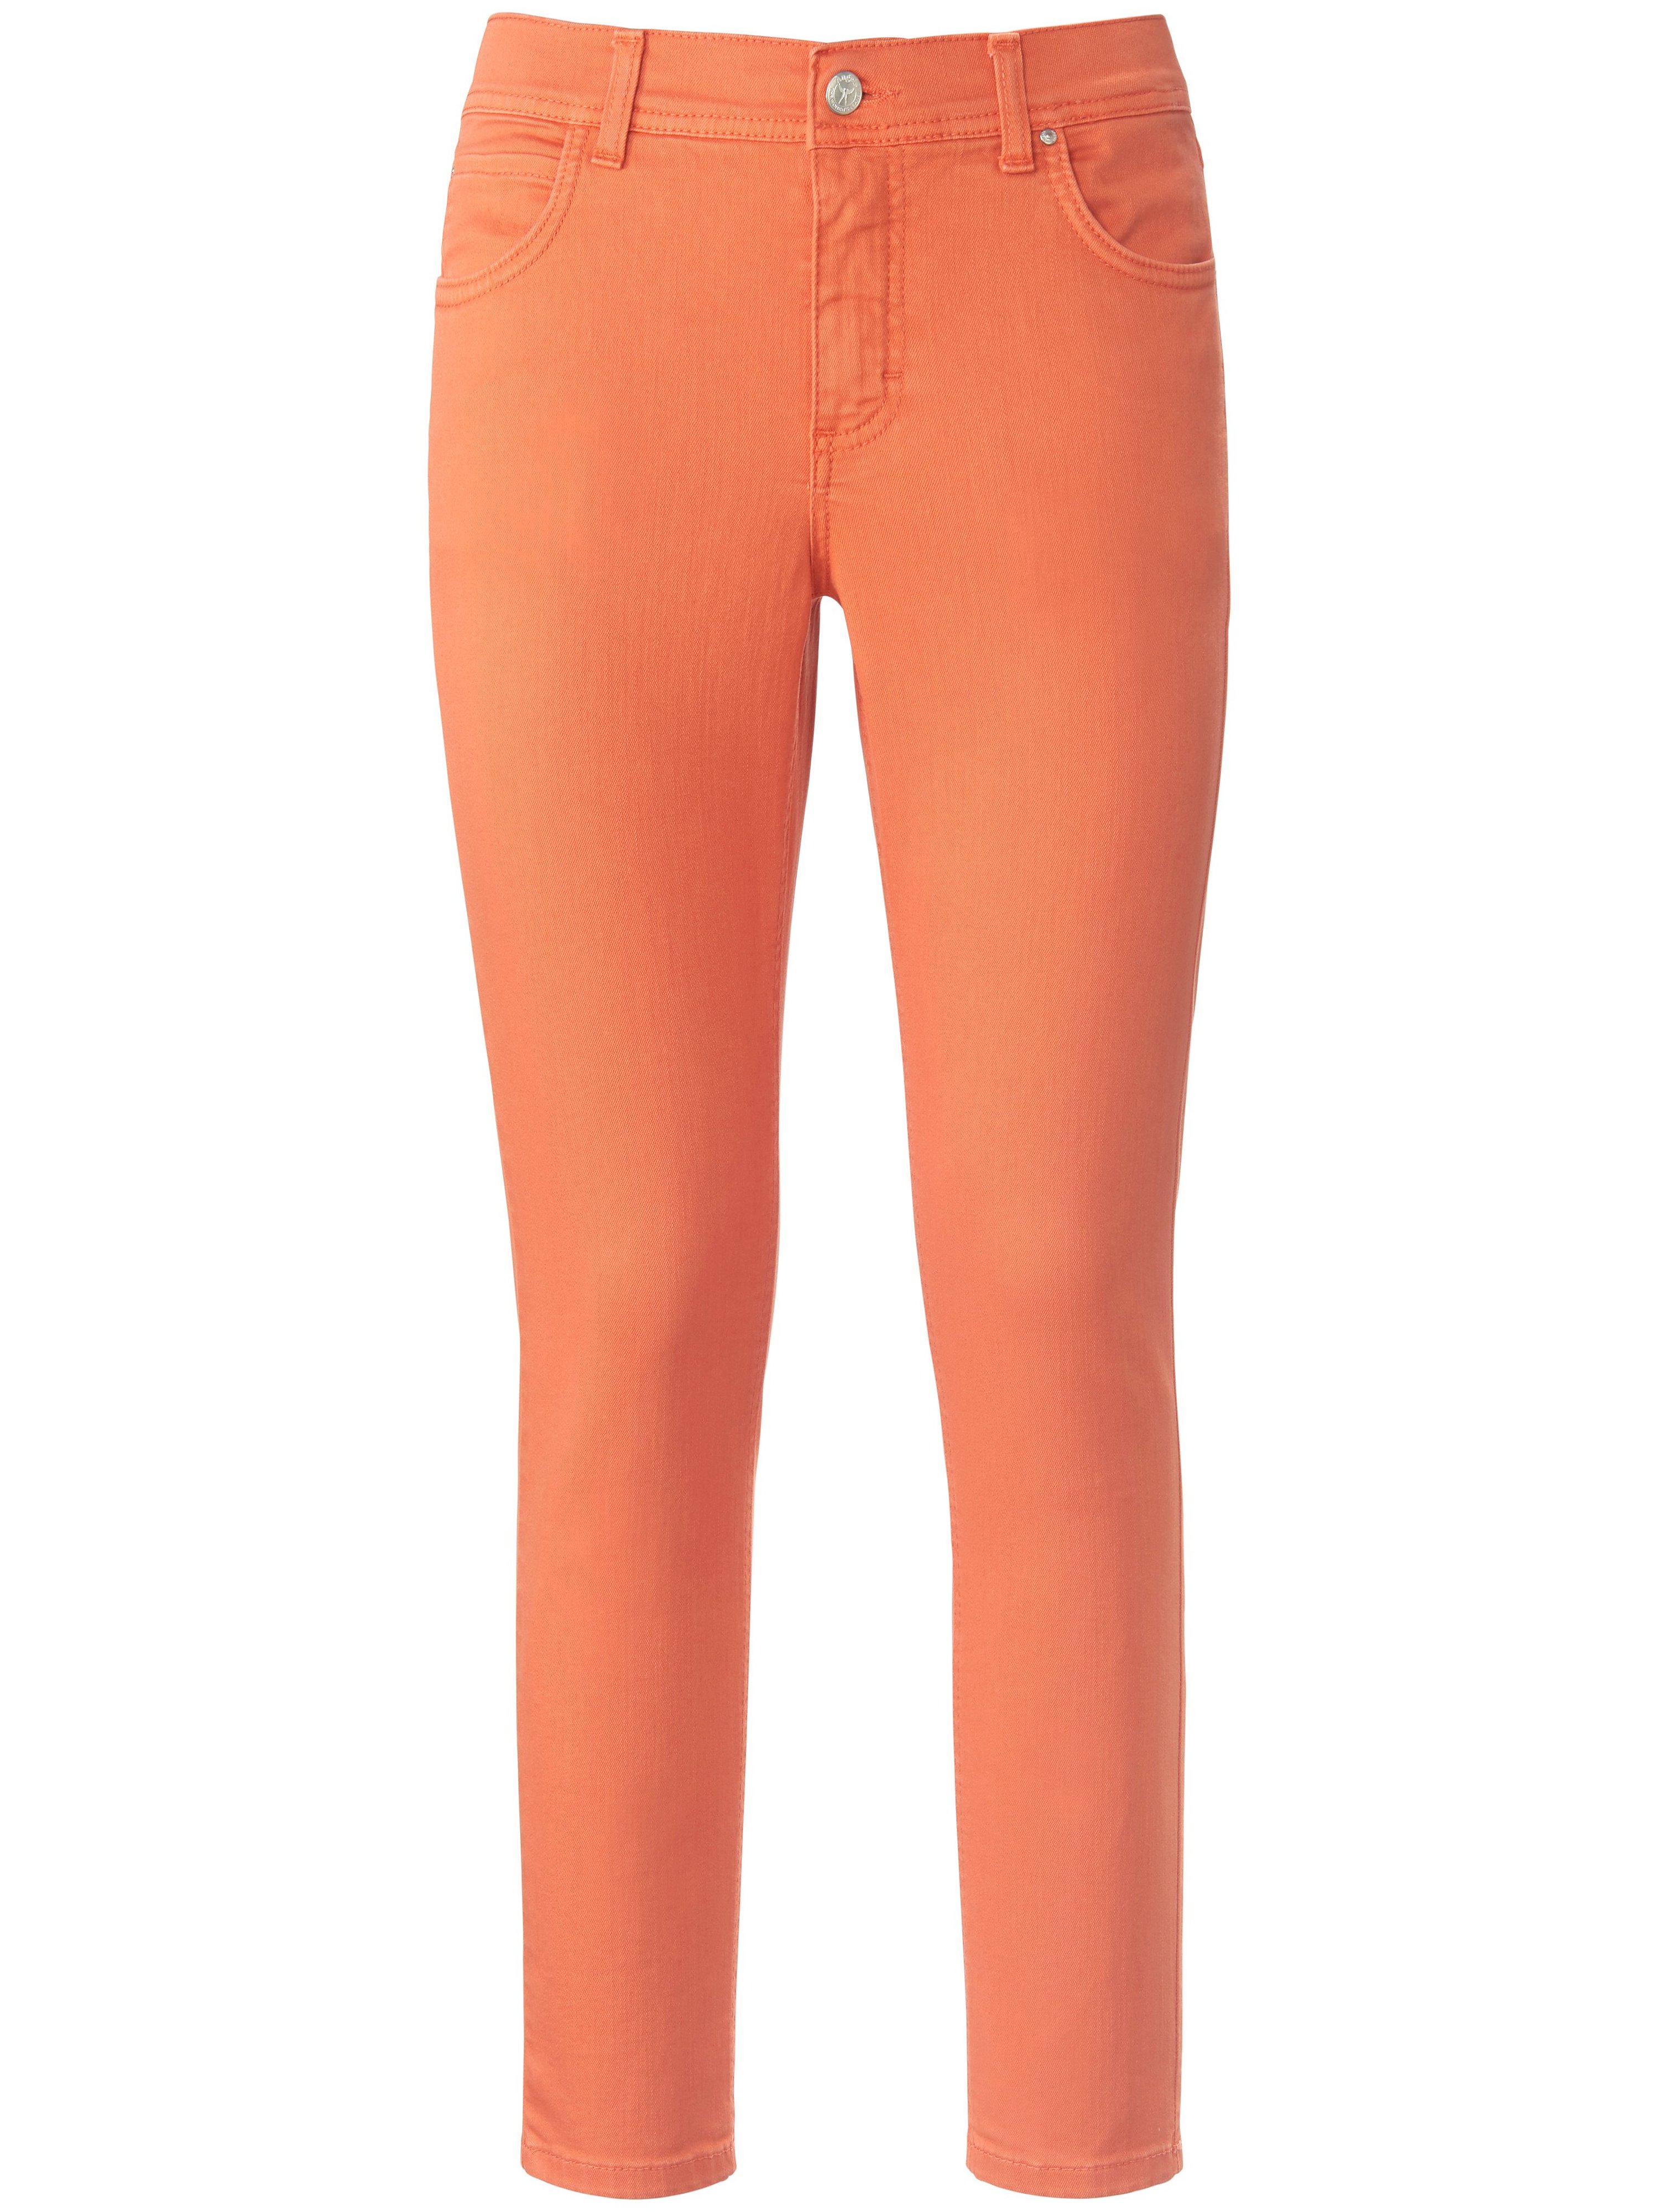 Jeans model Ornella iets kortere pijpen Van ANGELS oranje